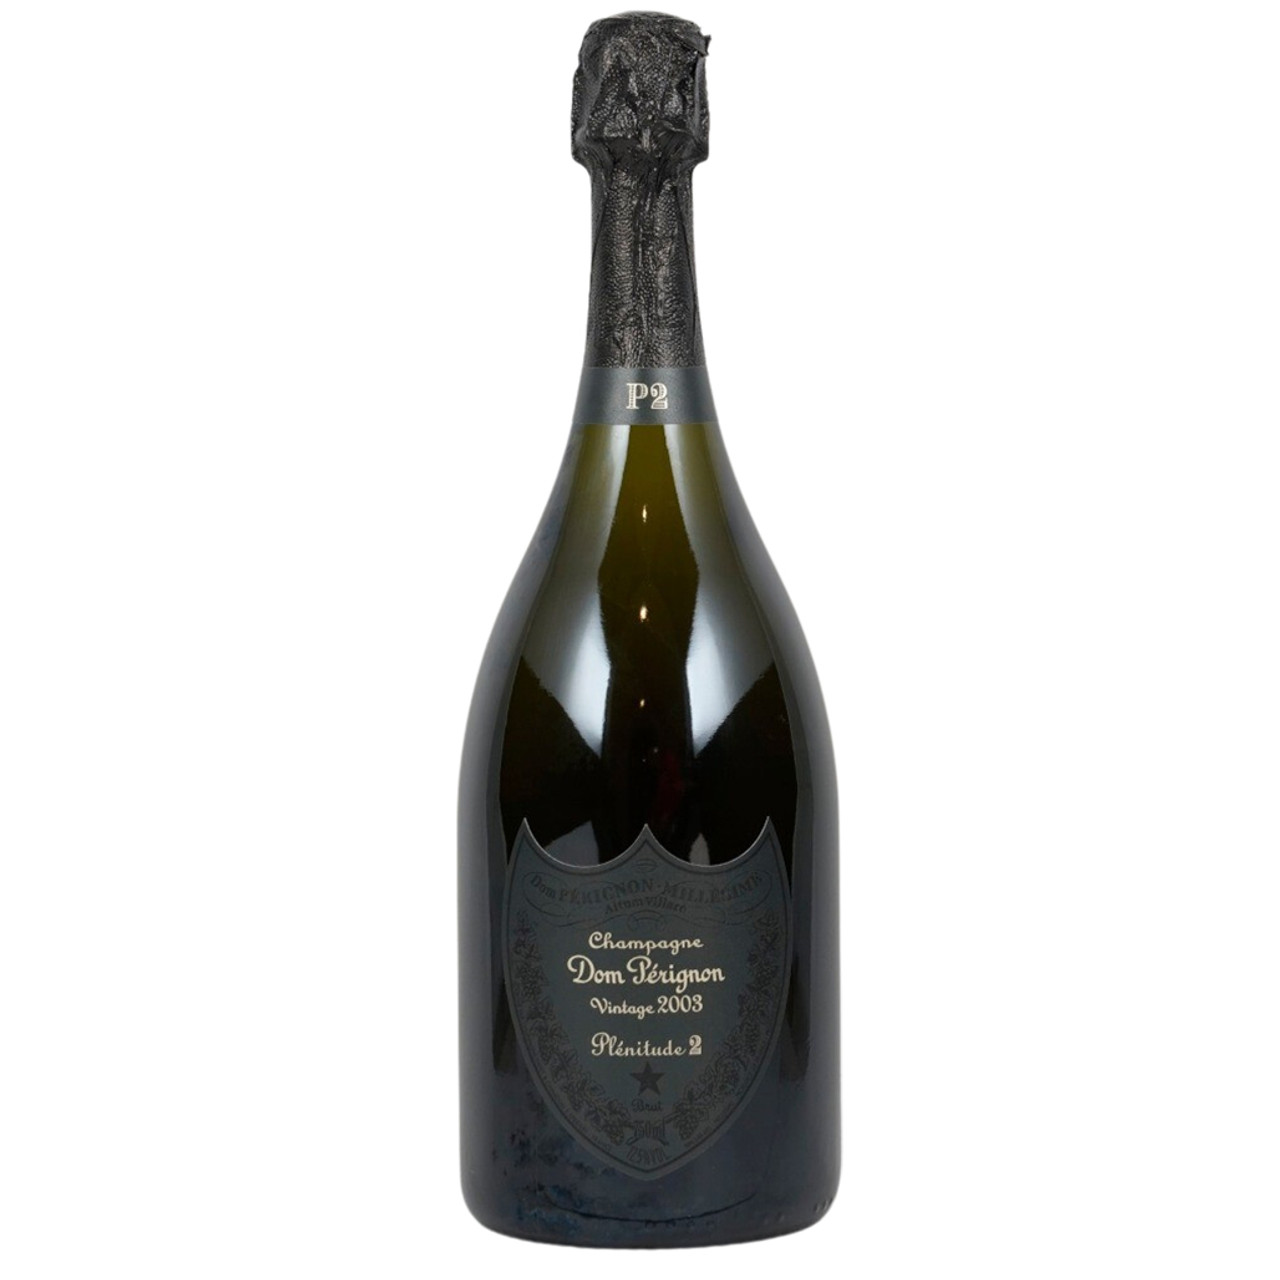 Dom Perignon P2 Brut Champagne